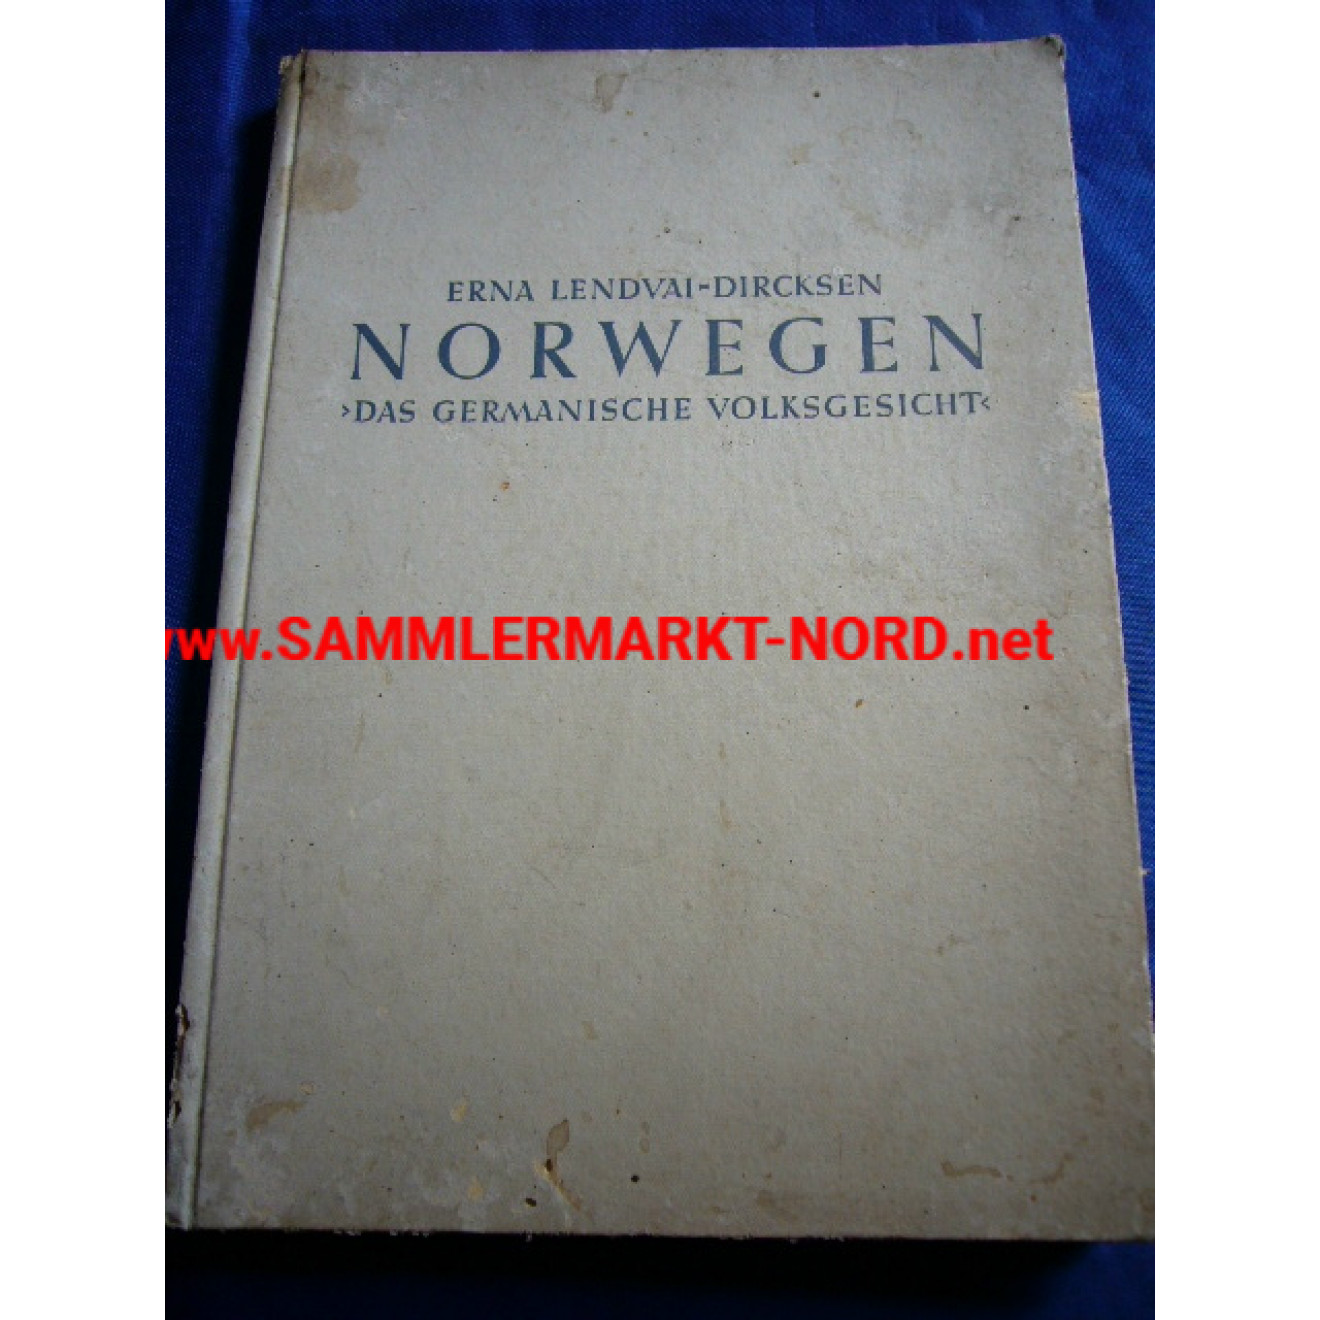 Norwegen - Das germanische Volksgesicht